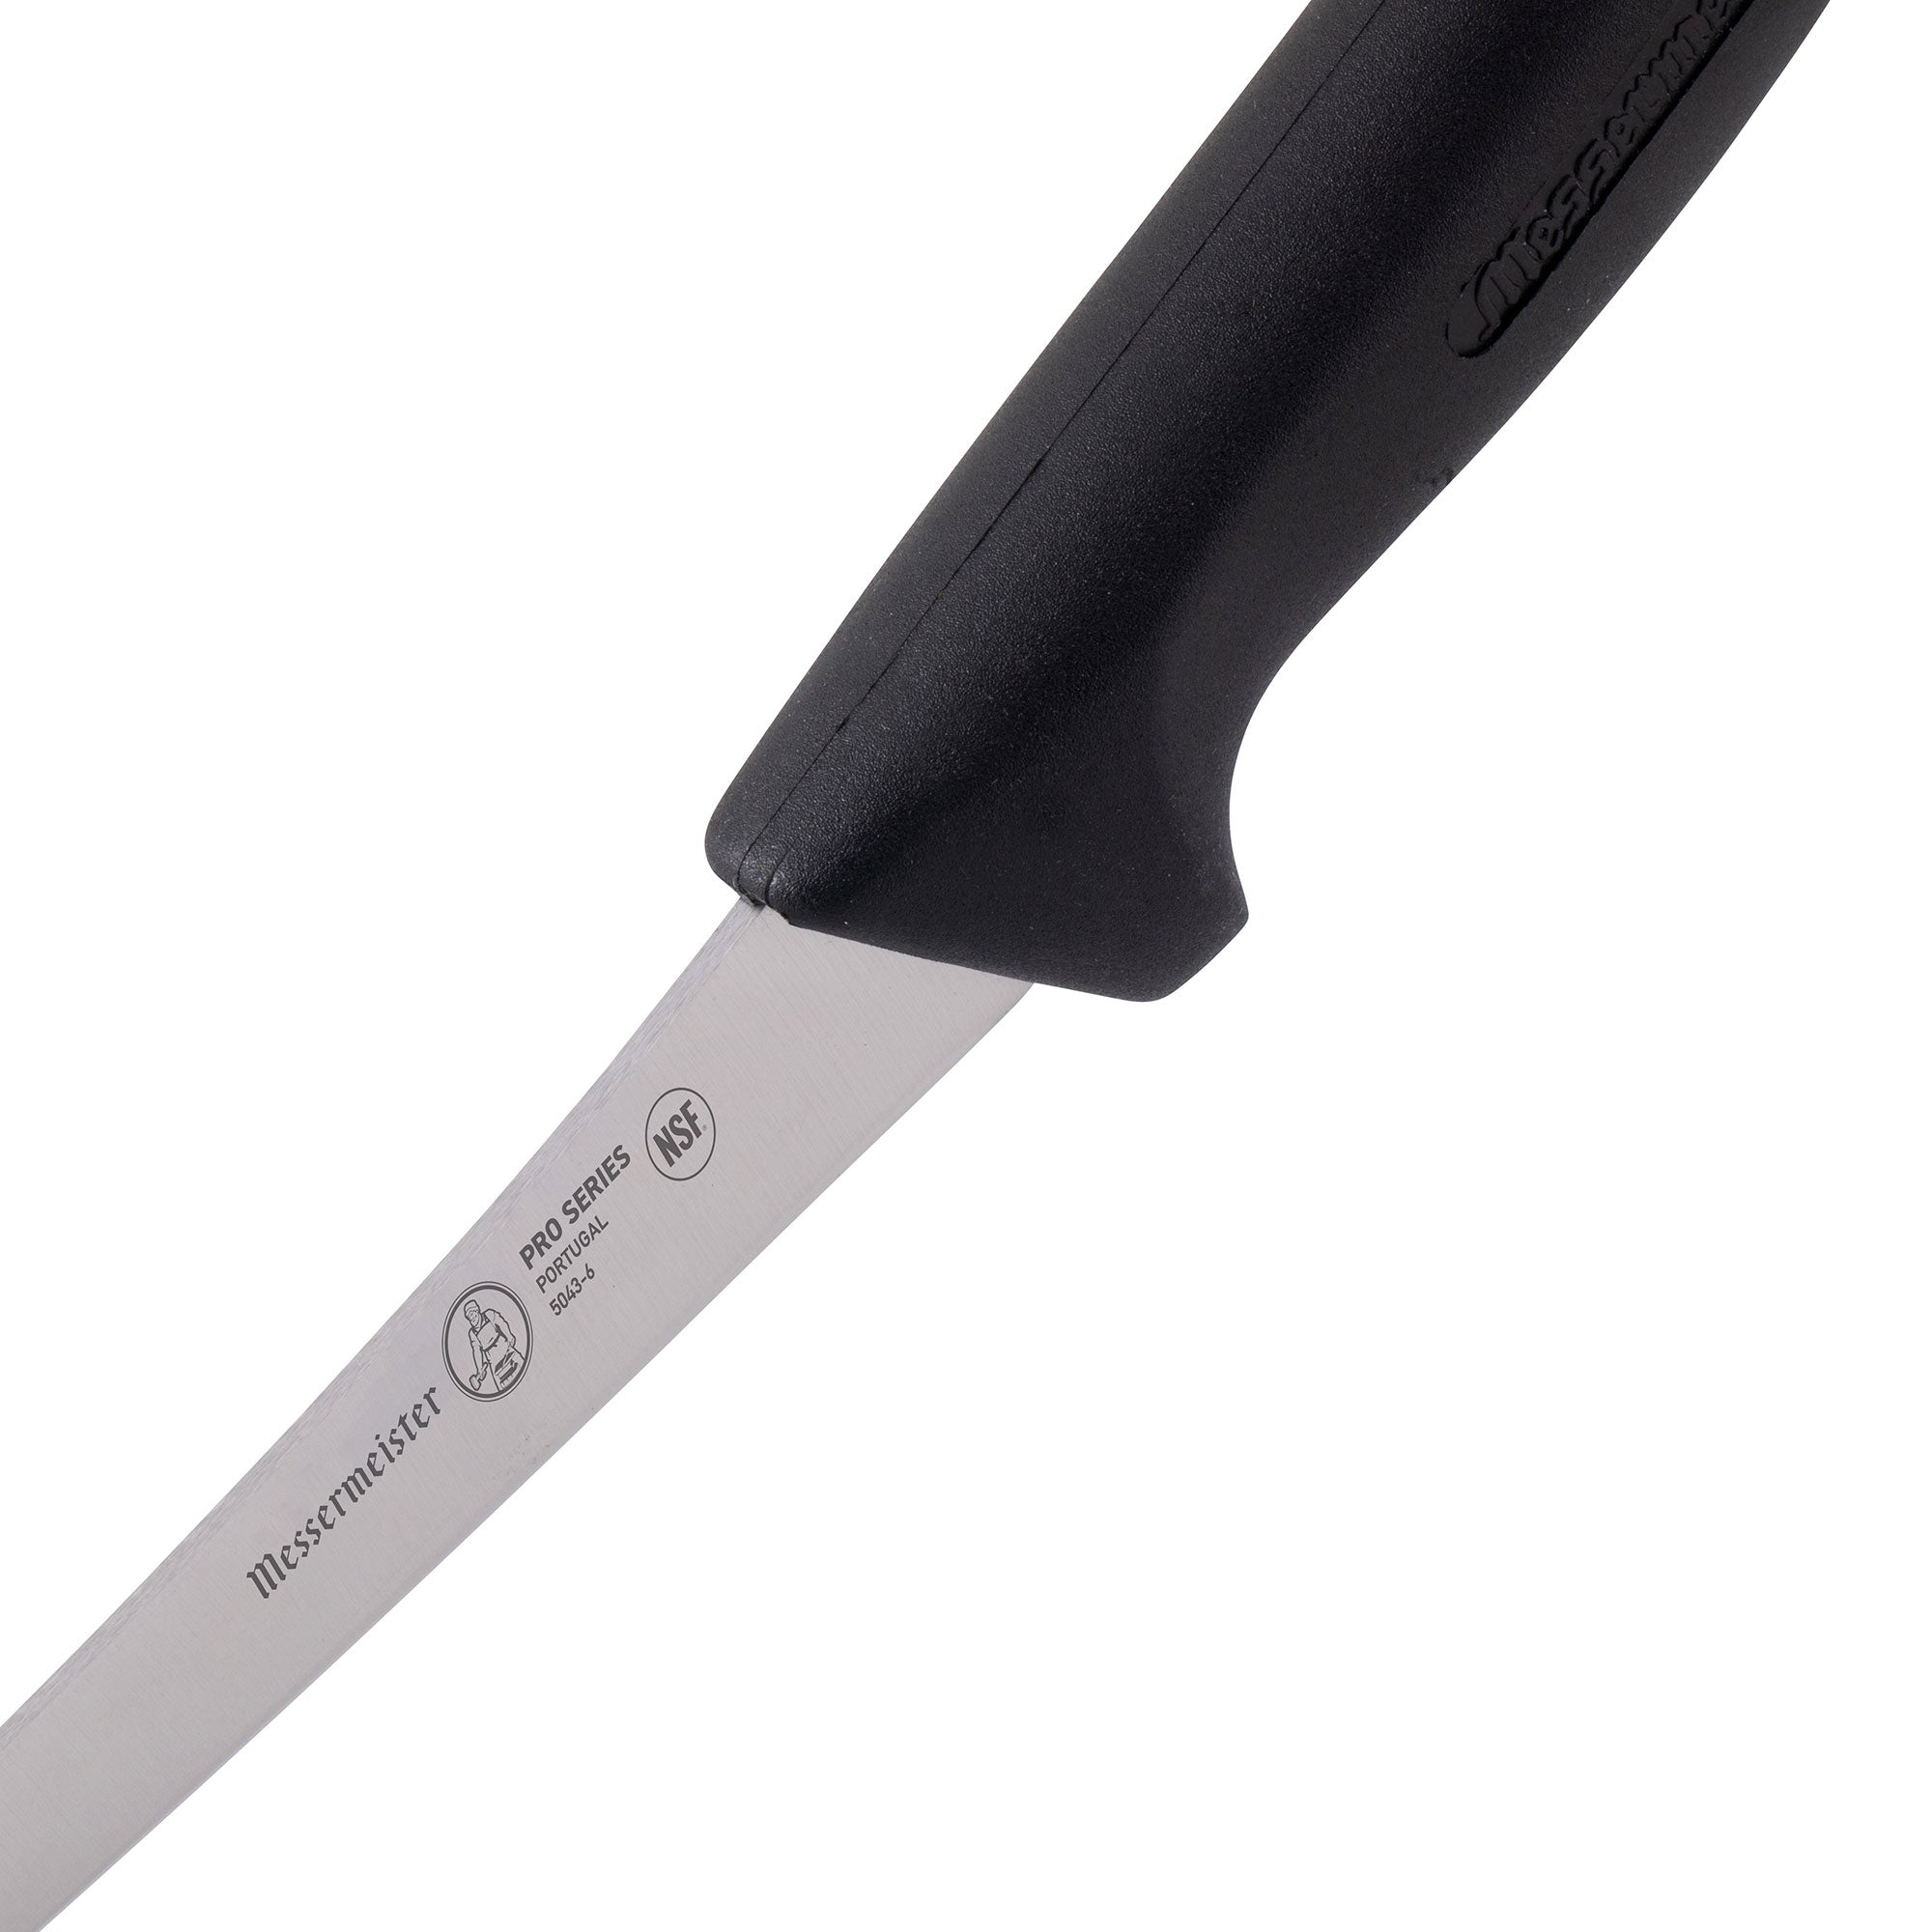 Update International KP-04 - 6 German Steel Curved-Blade Boning Knife